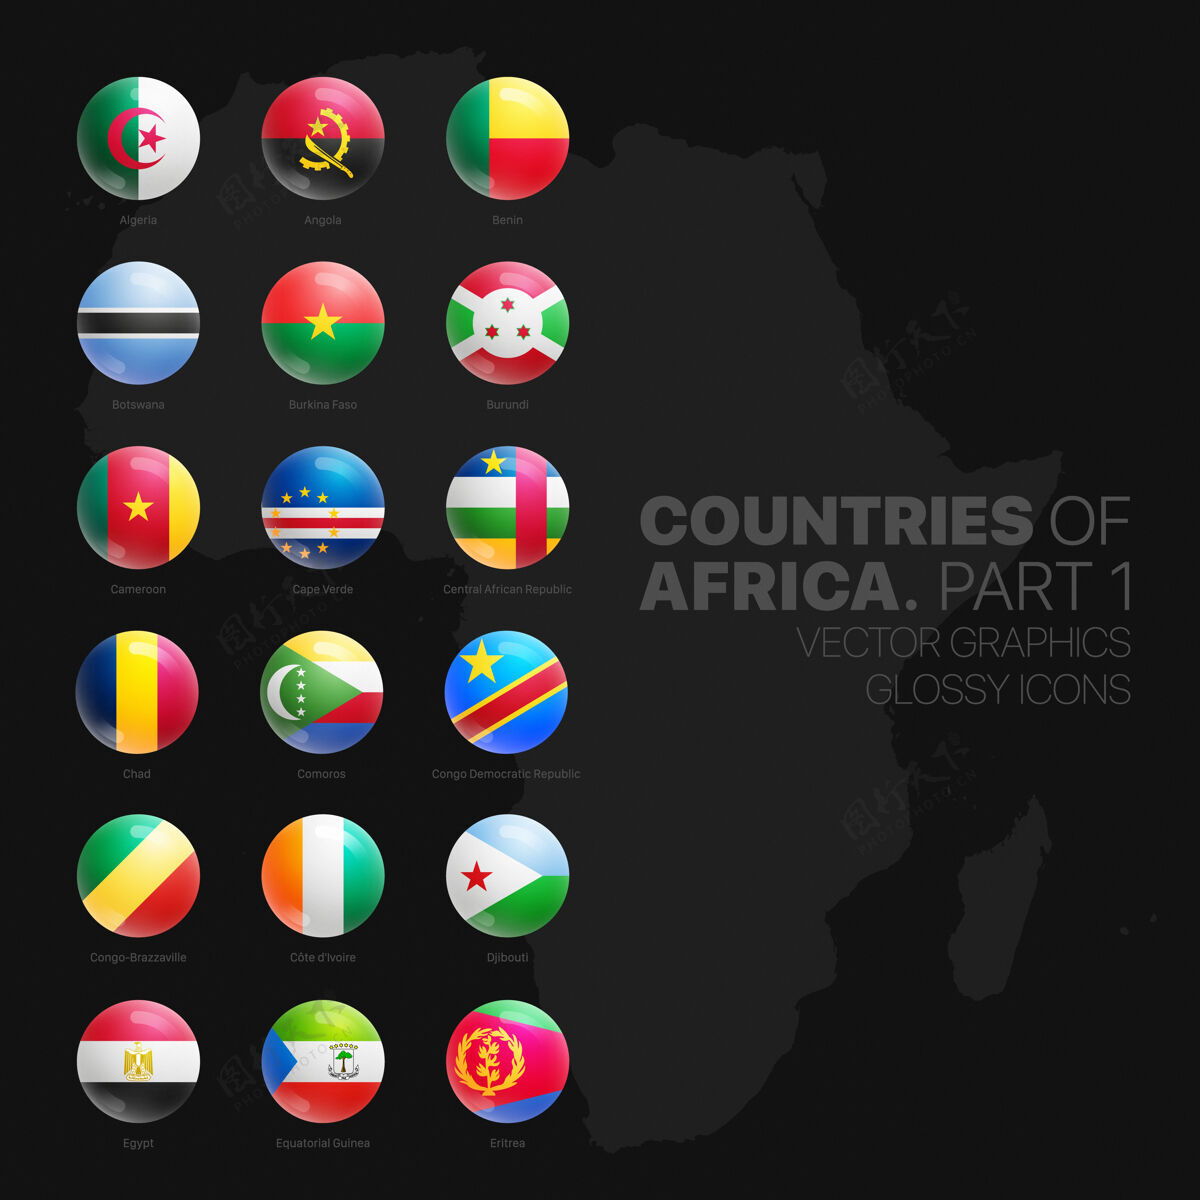 爱国非洲国家国旗光滑圆形图标集体育信息图旅游